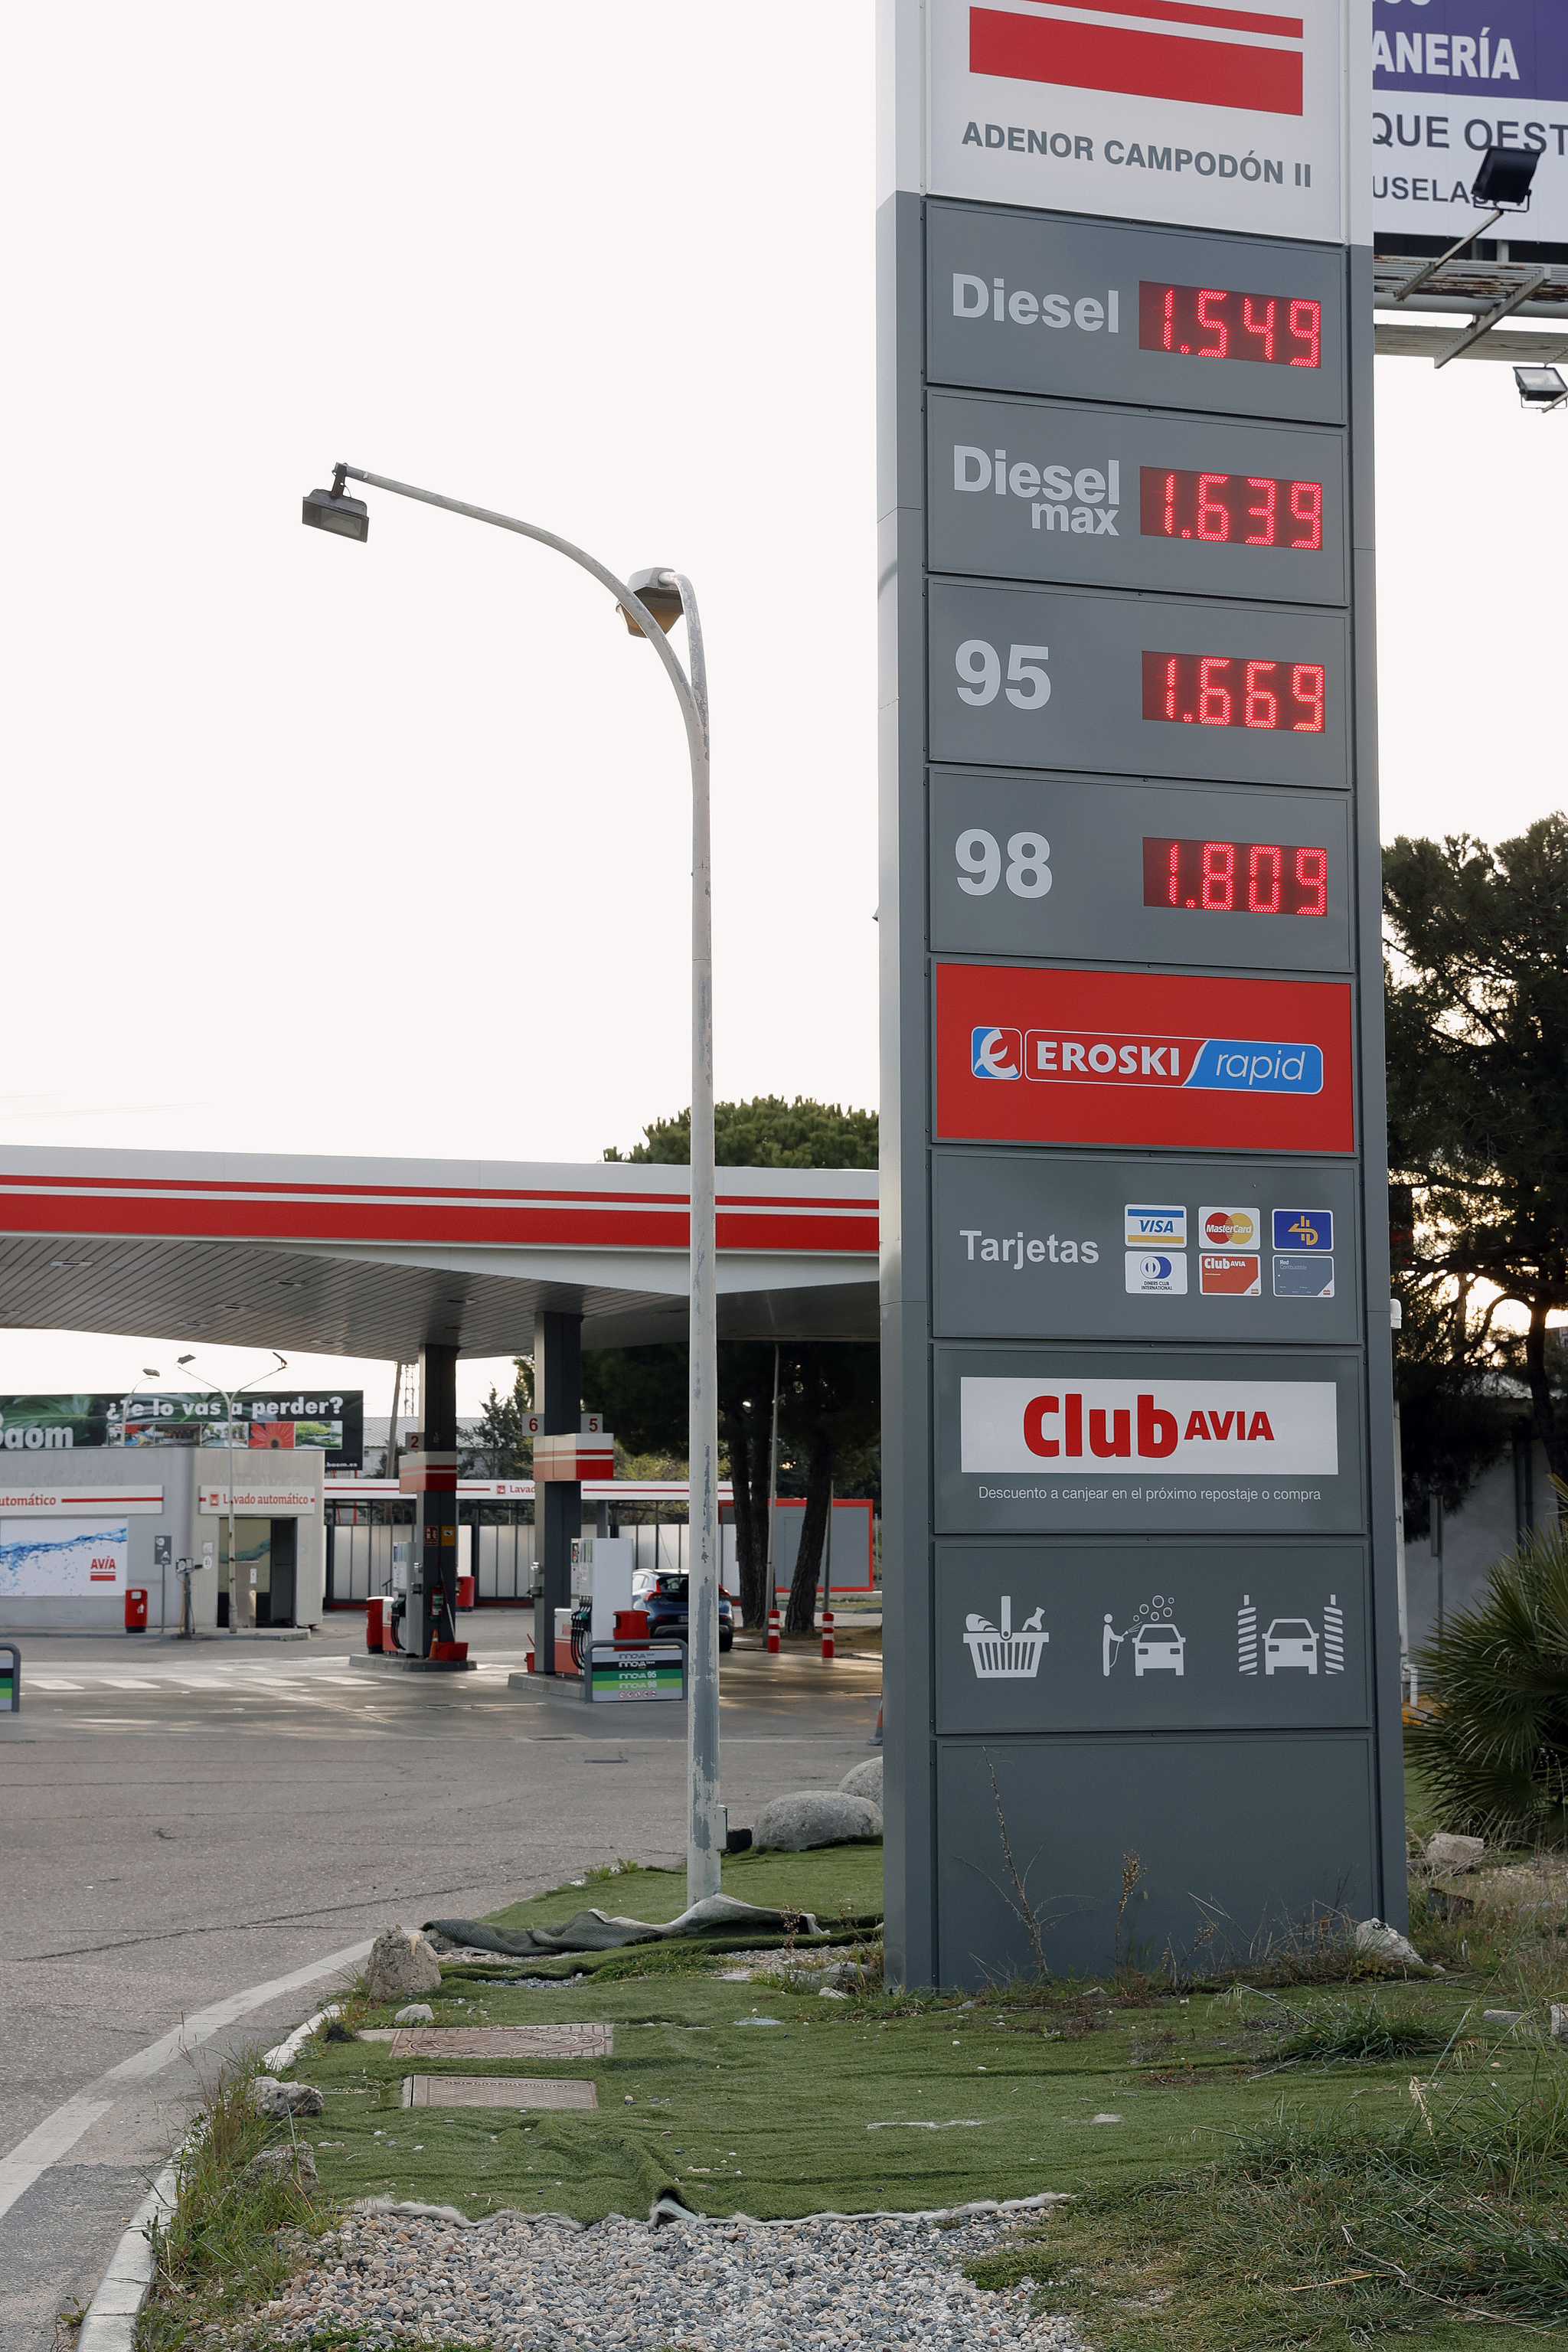 precios gasolina - precios diesel - maximo historico en España - dos euros - boletin observatorio de la energia